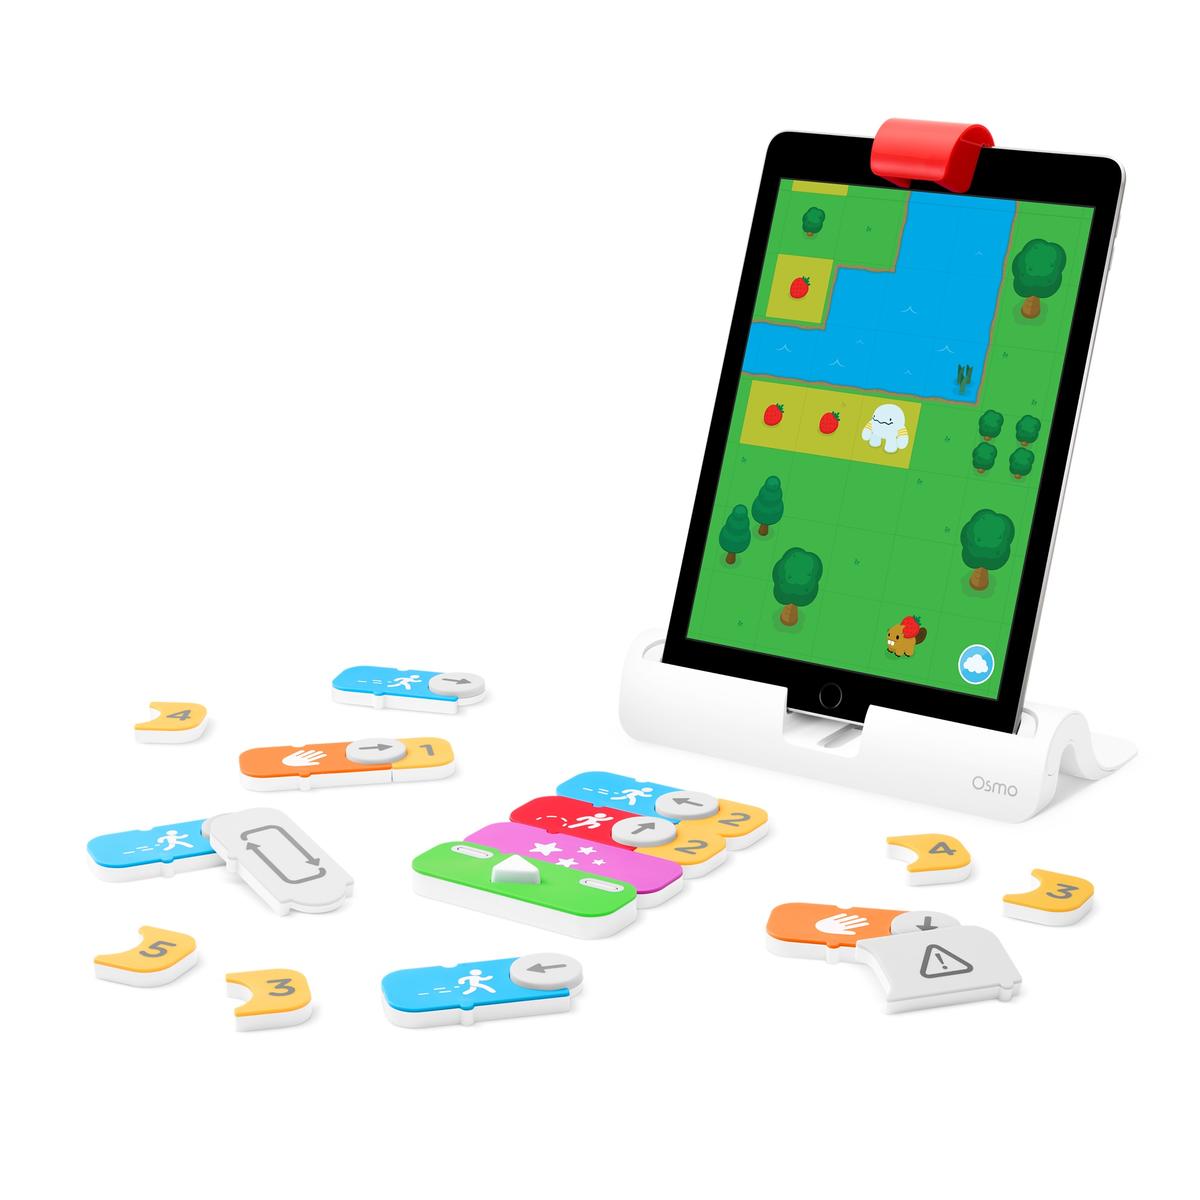 Juegos educativos Osmo para iPad: qué son y modelos que puedes comprar